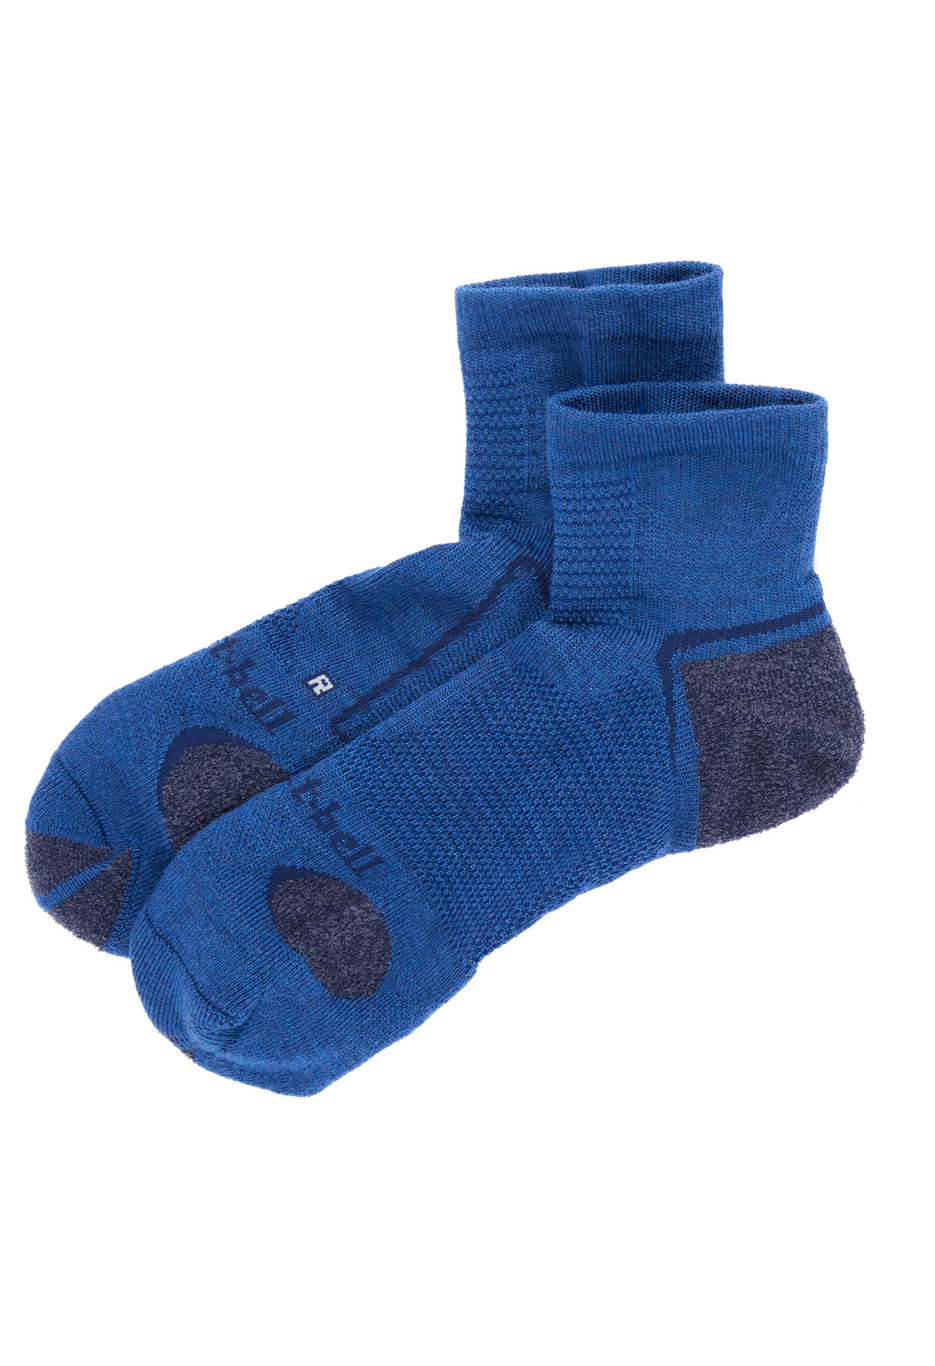 Montbell Merino Wool Supportec Walking Short Socks - Navy